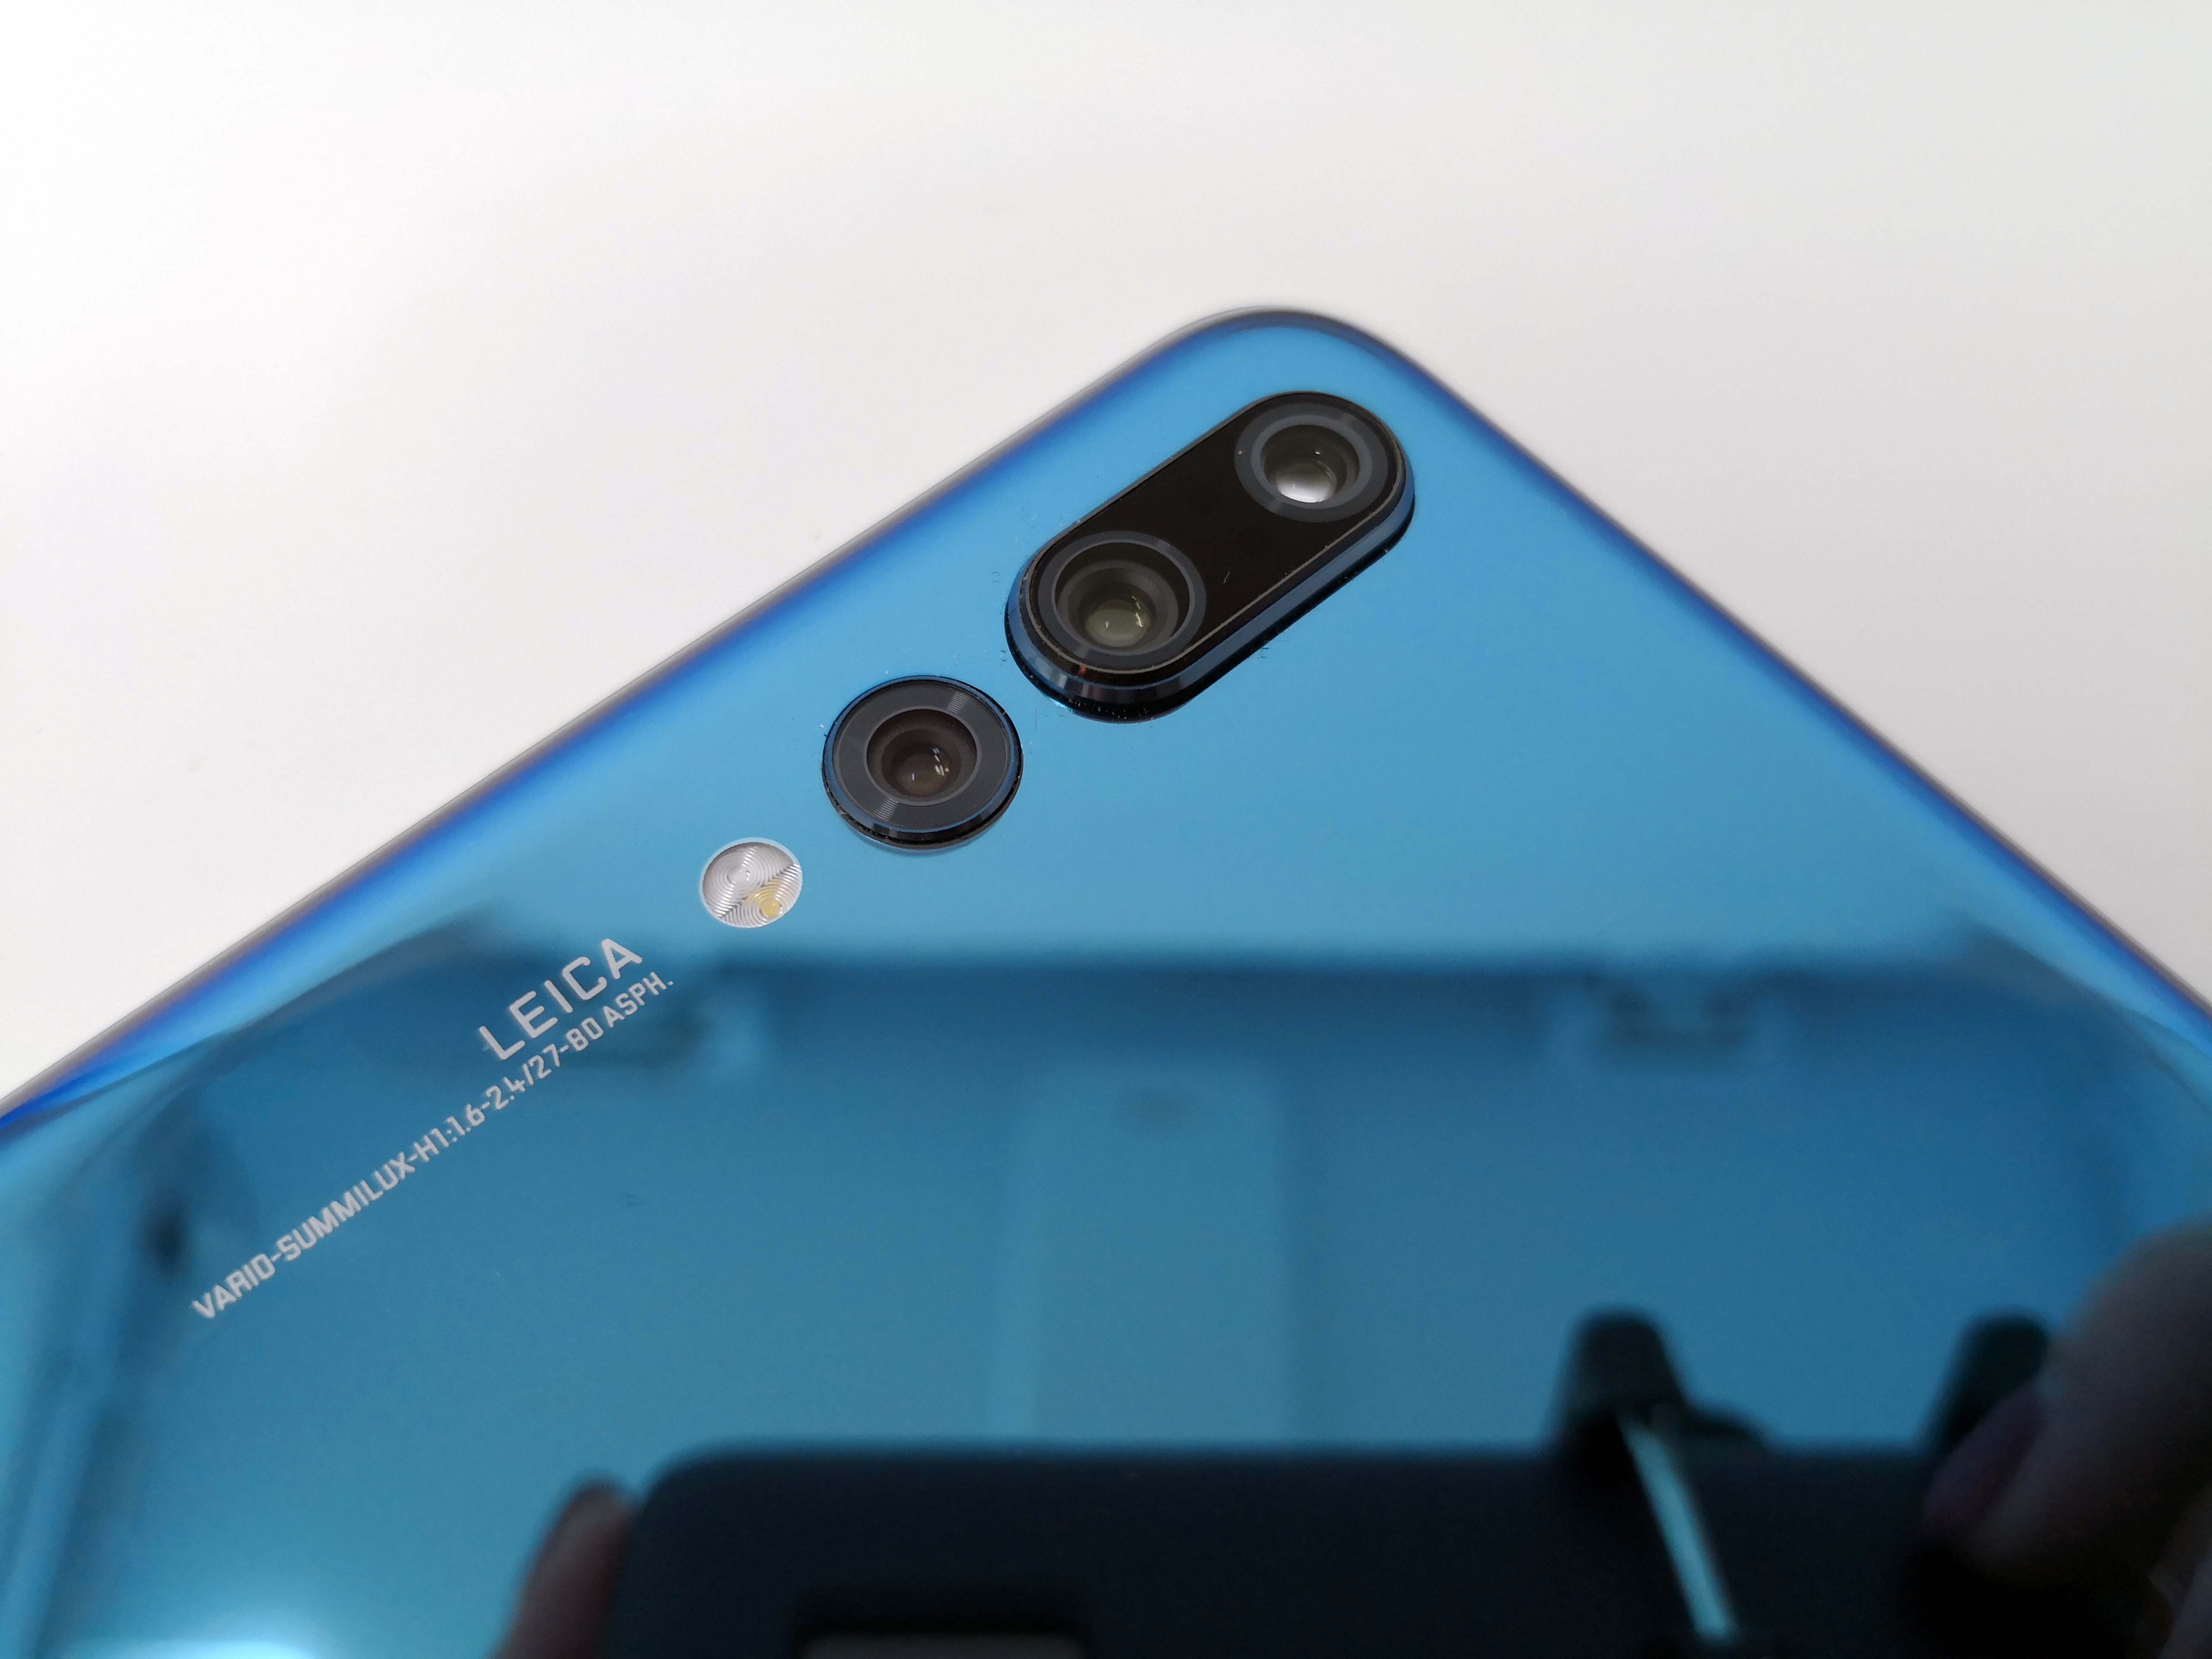 Huawei P20 und P20 Pro vorgestellt, wie das iPhone X besitzt es eine Notch